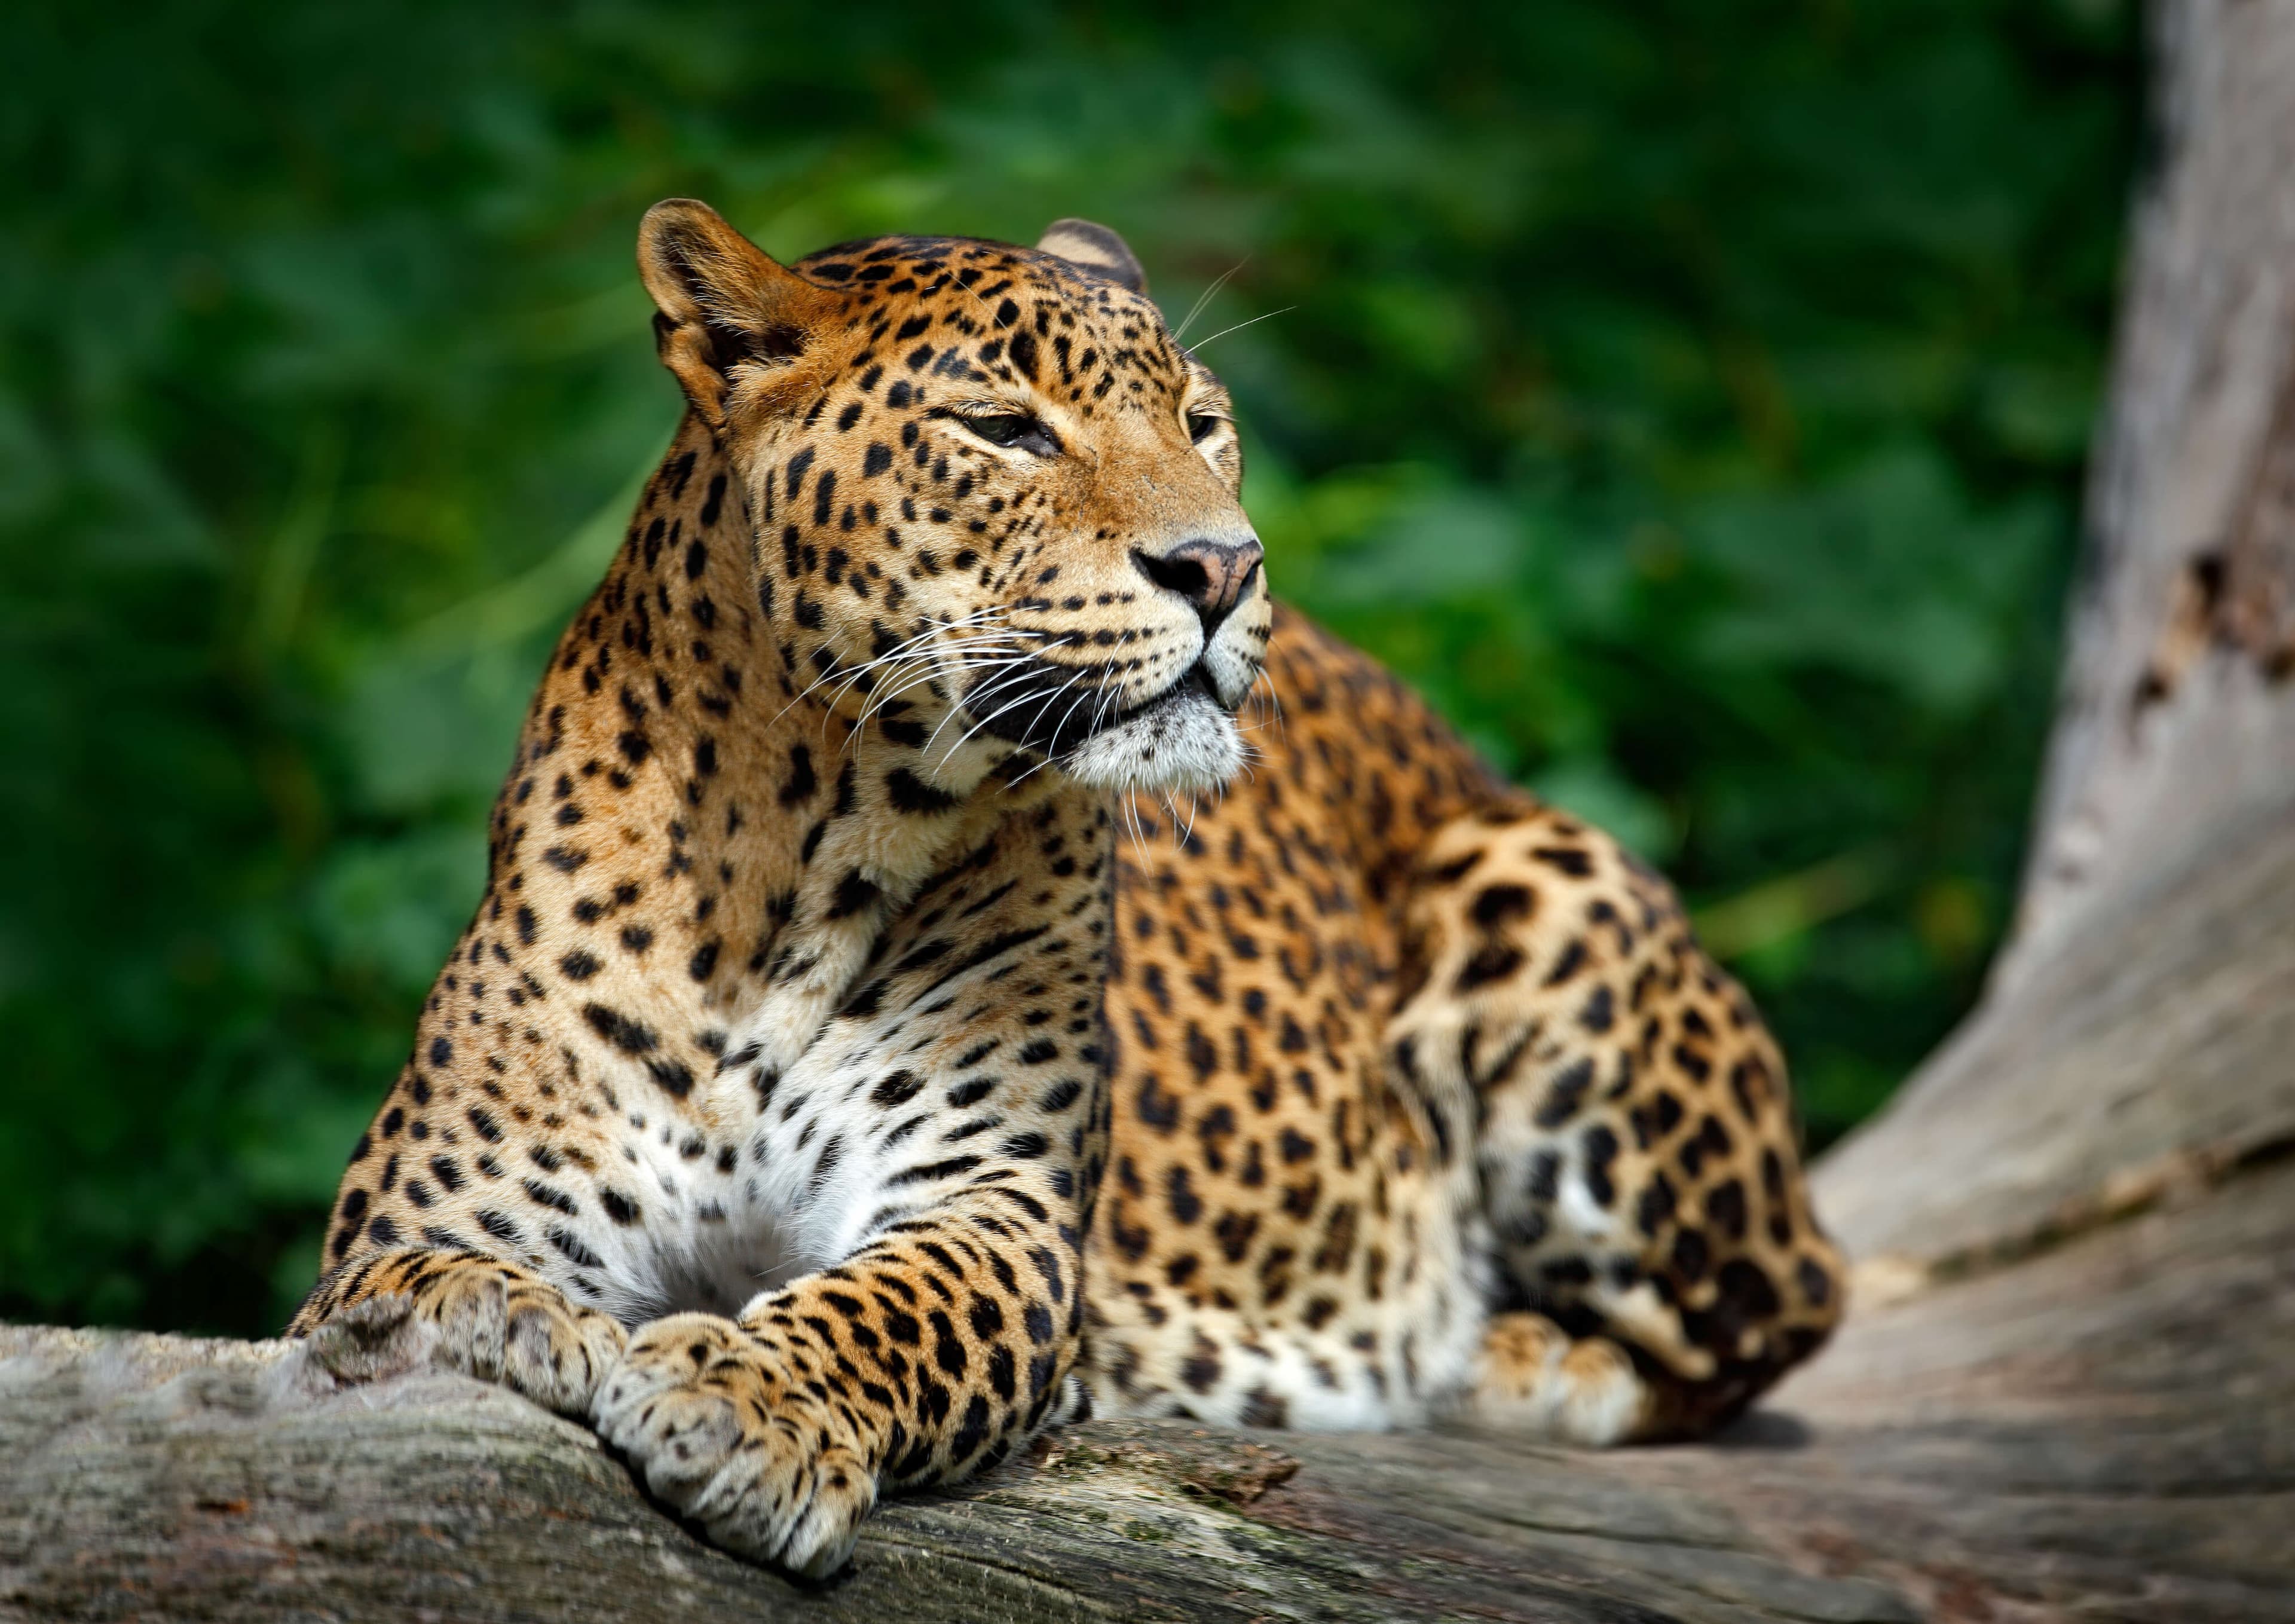 Шри-ланкийский леопард замечен в естественной среде обитания, национальный парк Яла, Шри-Ланка.